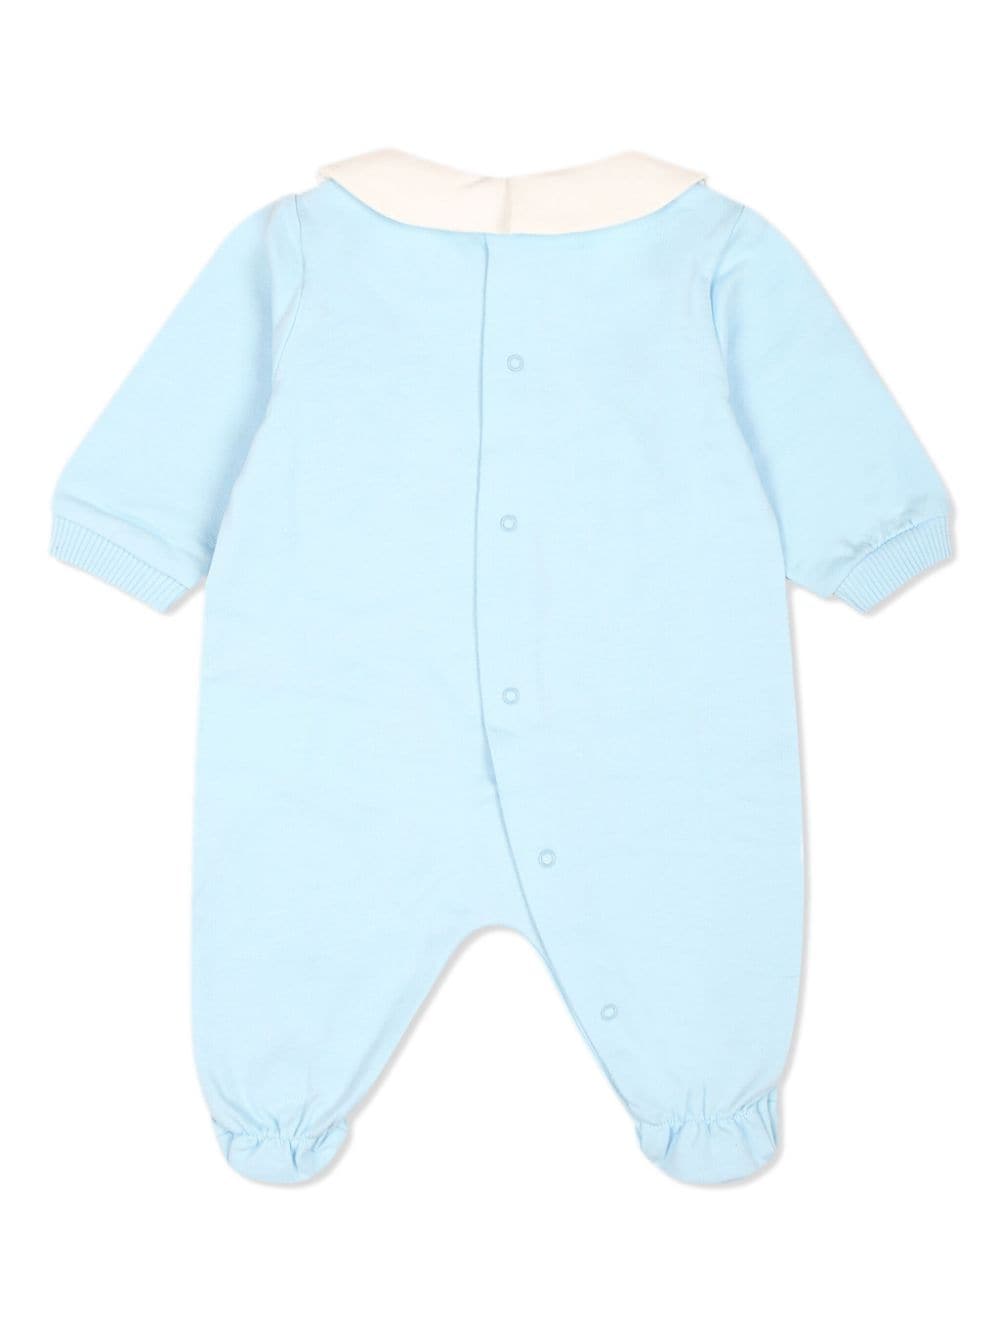 Tutina per neonato in cotone azzurra